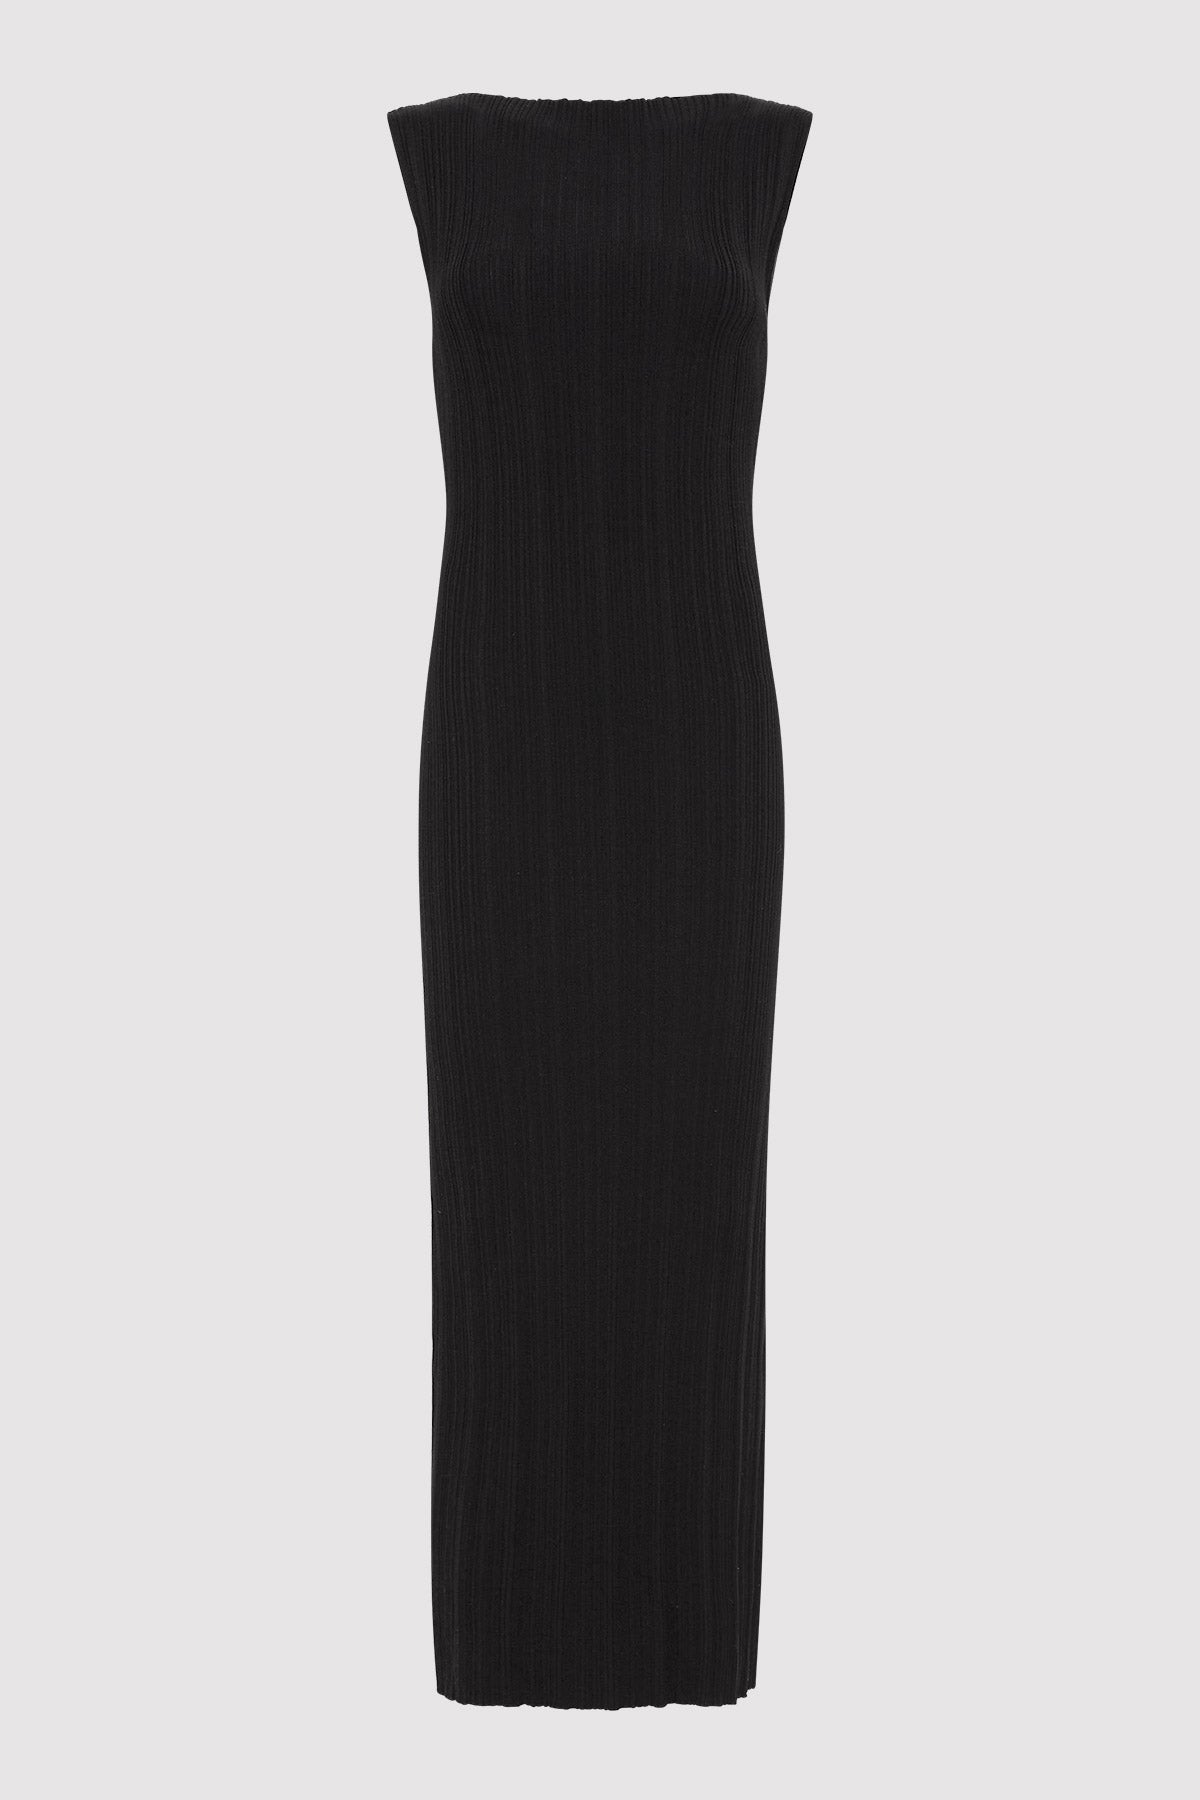 St. Agni | Vas Pleat Knit Dress in Black